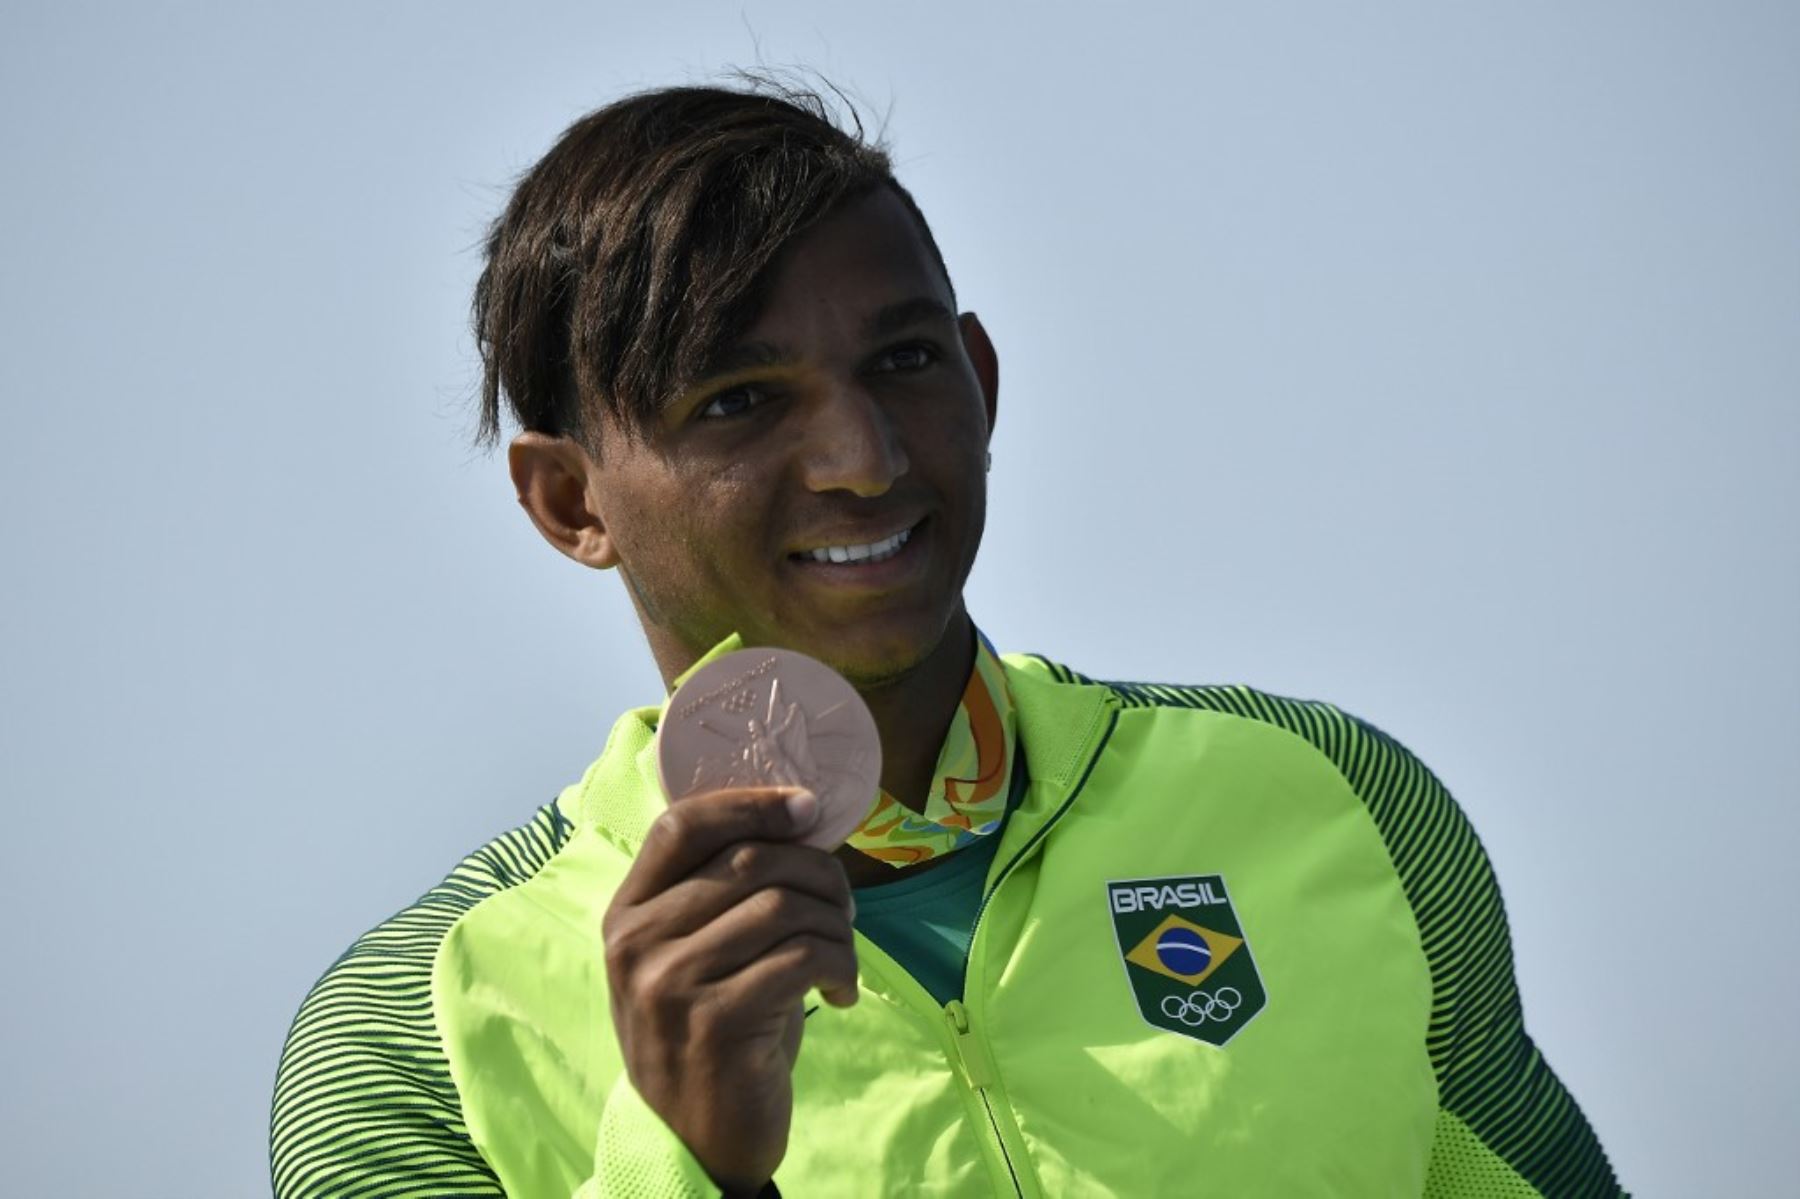 Isaquias Queiroz Dos Santos es una de las carta de medalla de oro de Brasil en canotaje